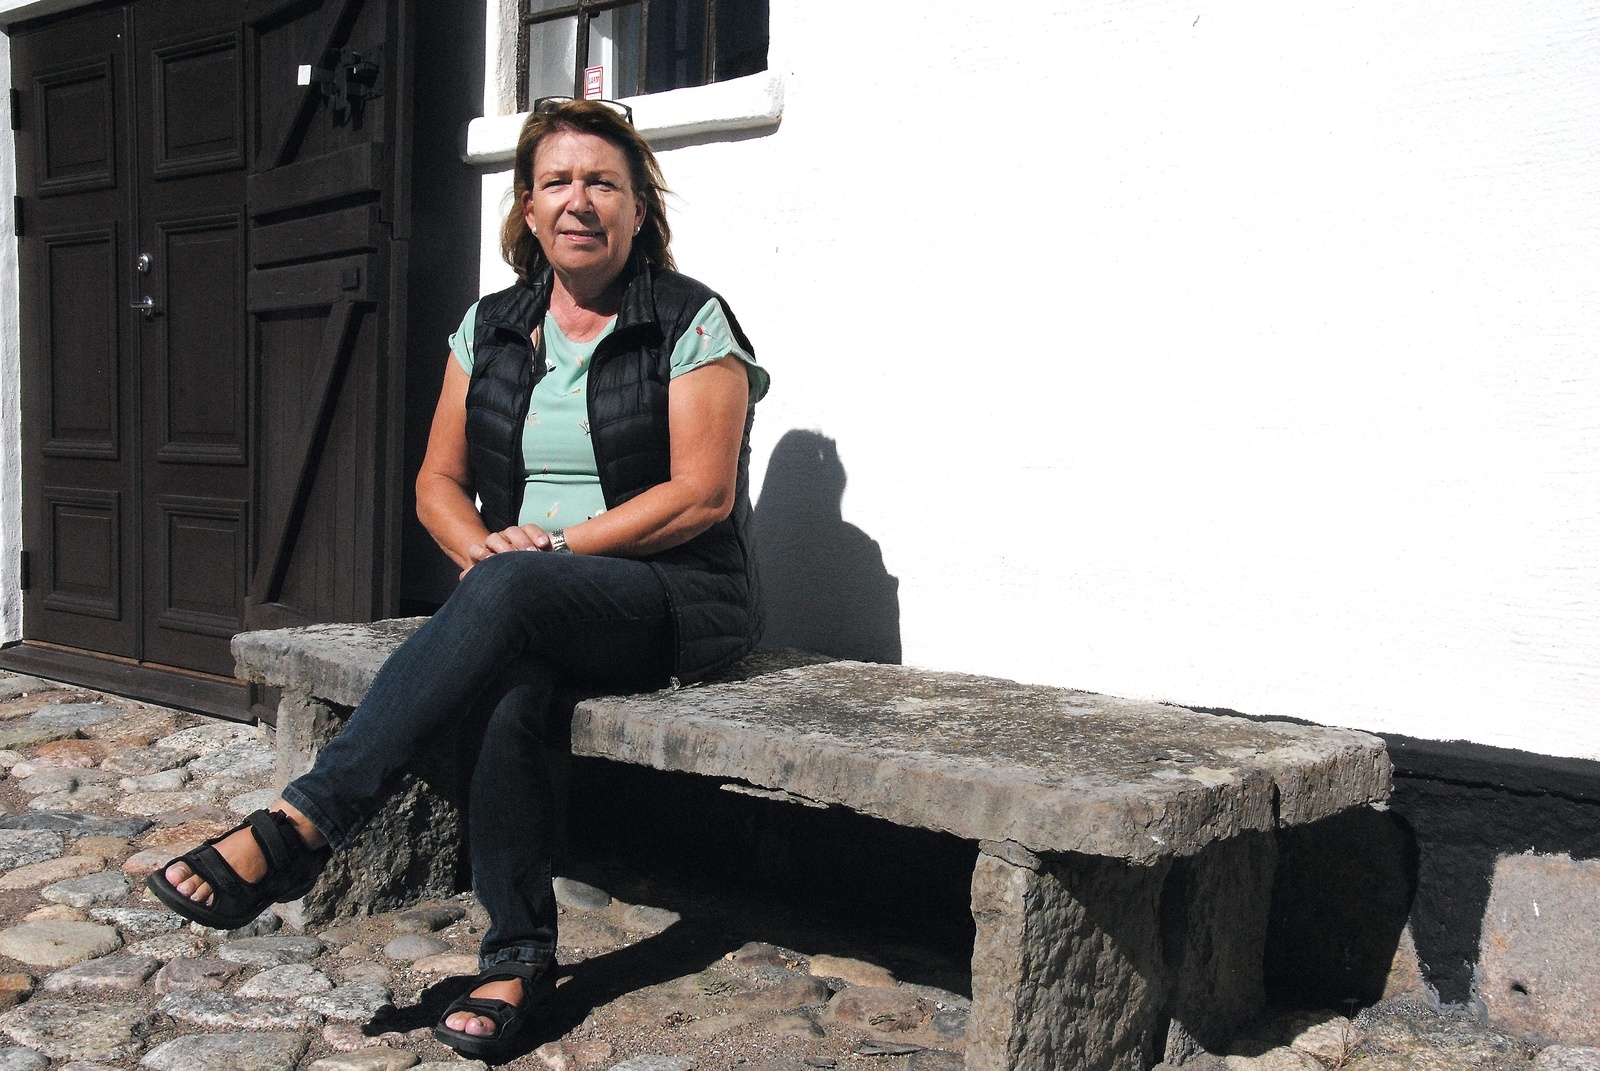 Den här stenbänken valde Dag Hammarskjöld ut att ha just på den här platsen, berättar Karin Erlandsson.
8Foto: Håkan Jacobsson